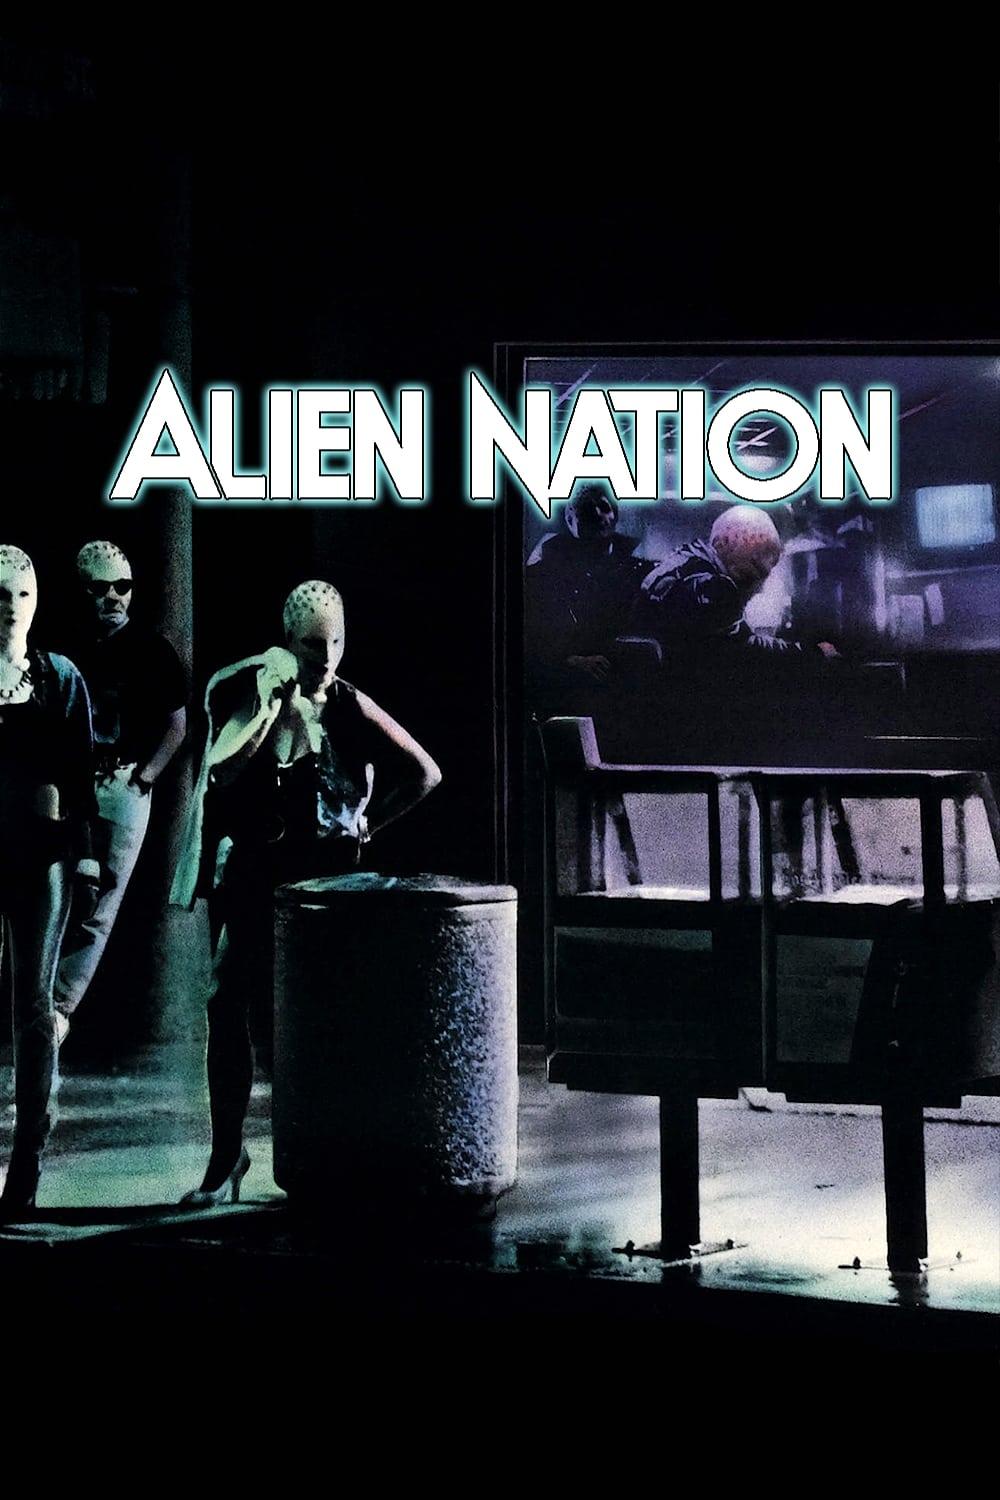 Alien Nation poster